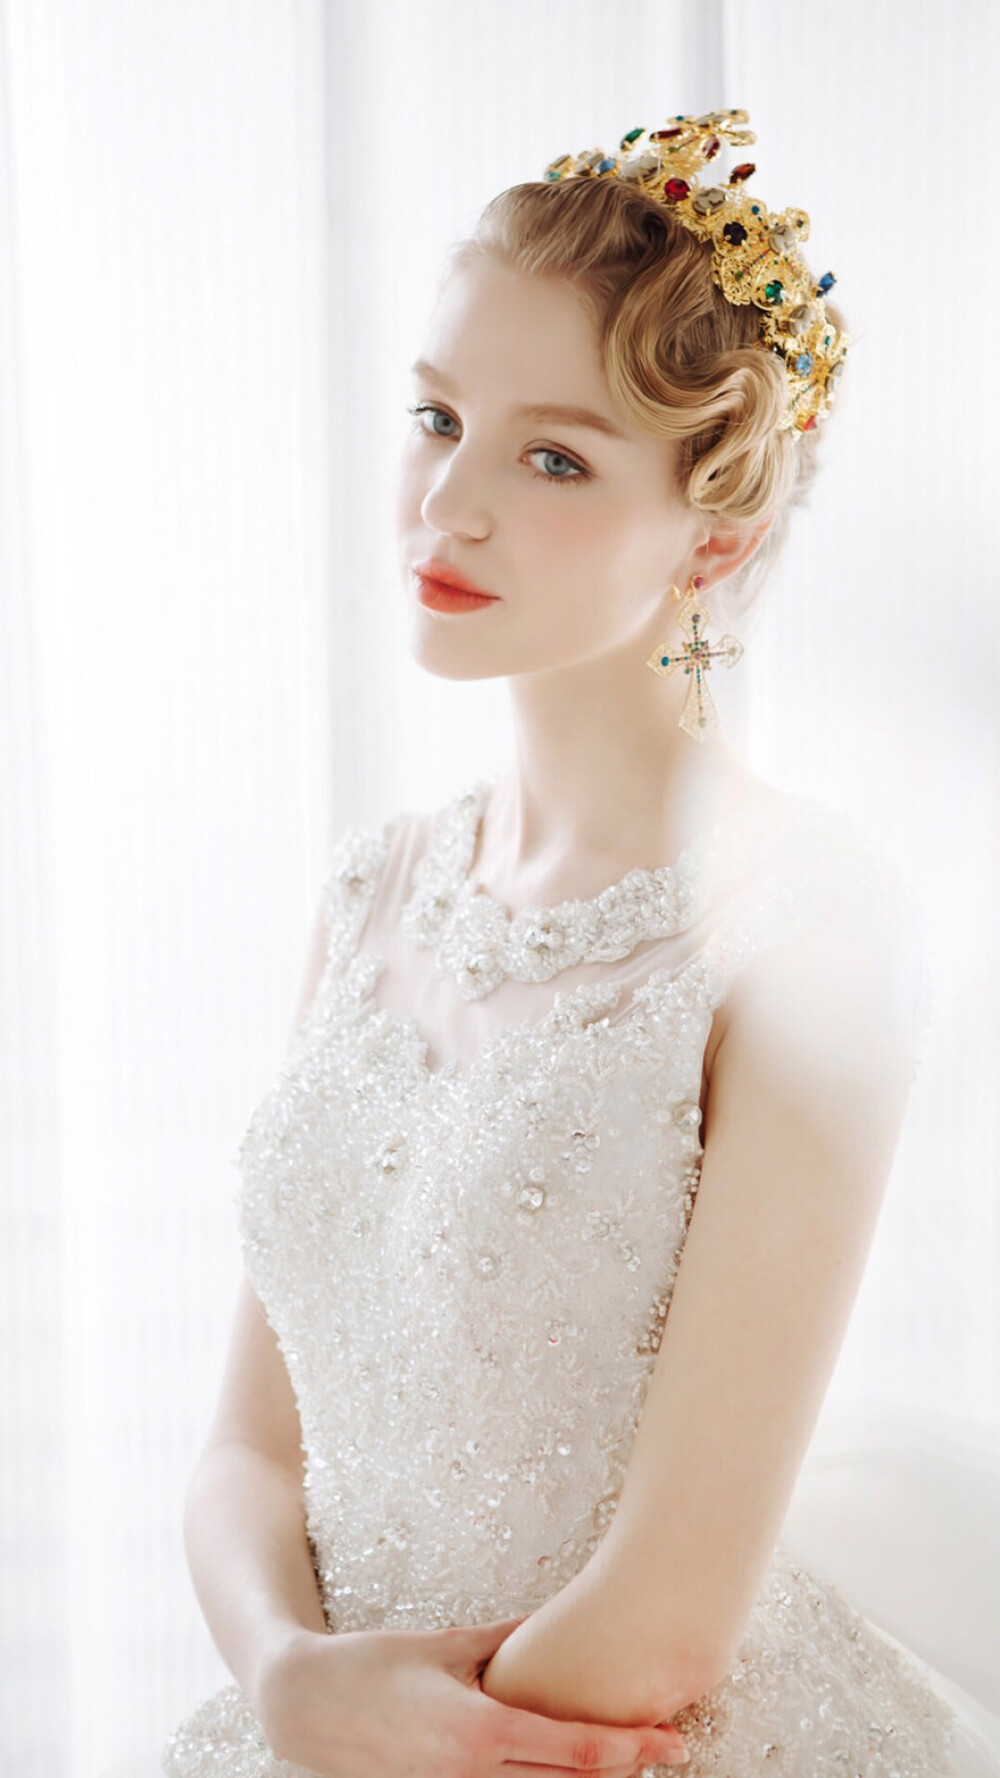 女王 女神 王冠 白色婚纱礼服 复古宫廷巴洛克 女生头像 唯美精灵 红唇白雪